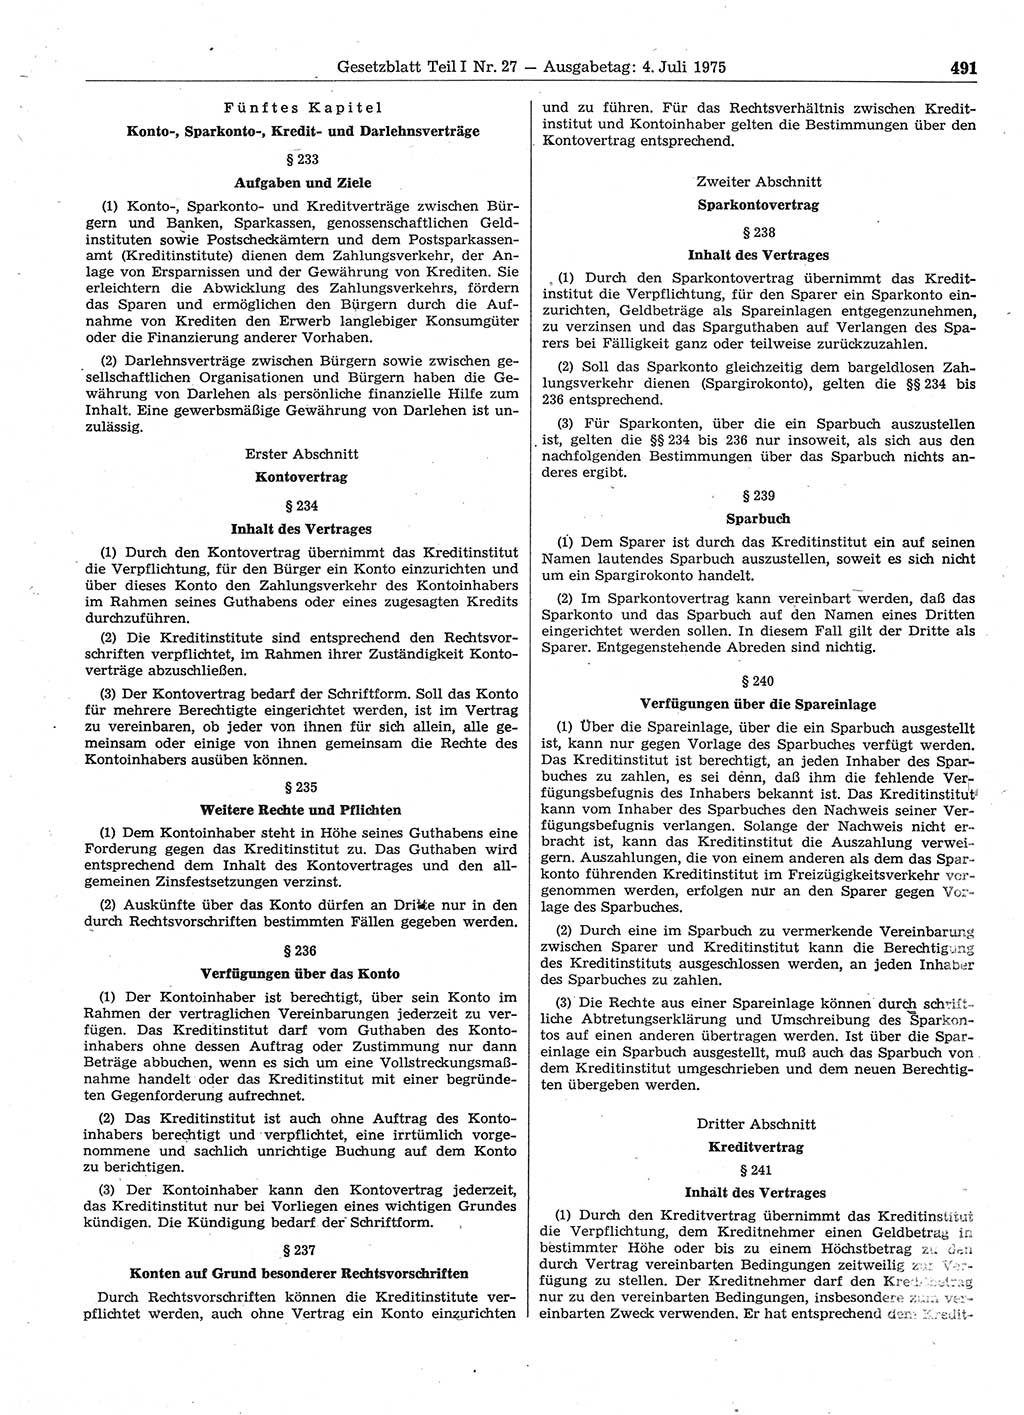 Gesetzblatt (GBl.) der Deutschen Demokratischen Republik (DDR) Teil Ⅰ 1975, Seite 491 (GBl. DDR Ⅰ 1975, S. 491)